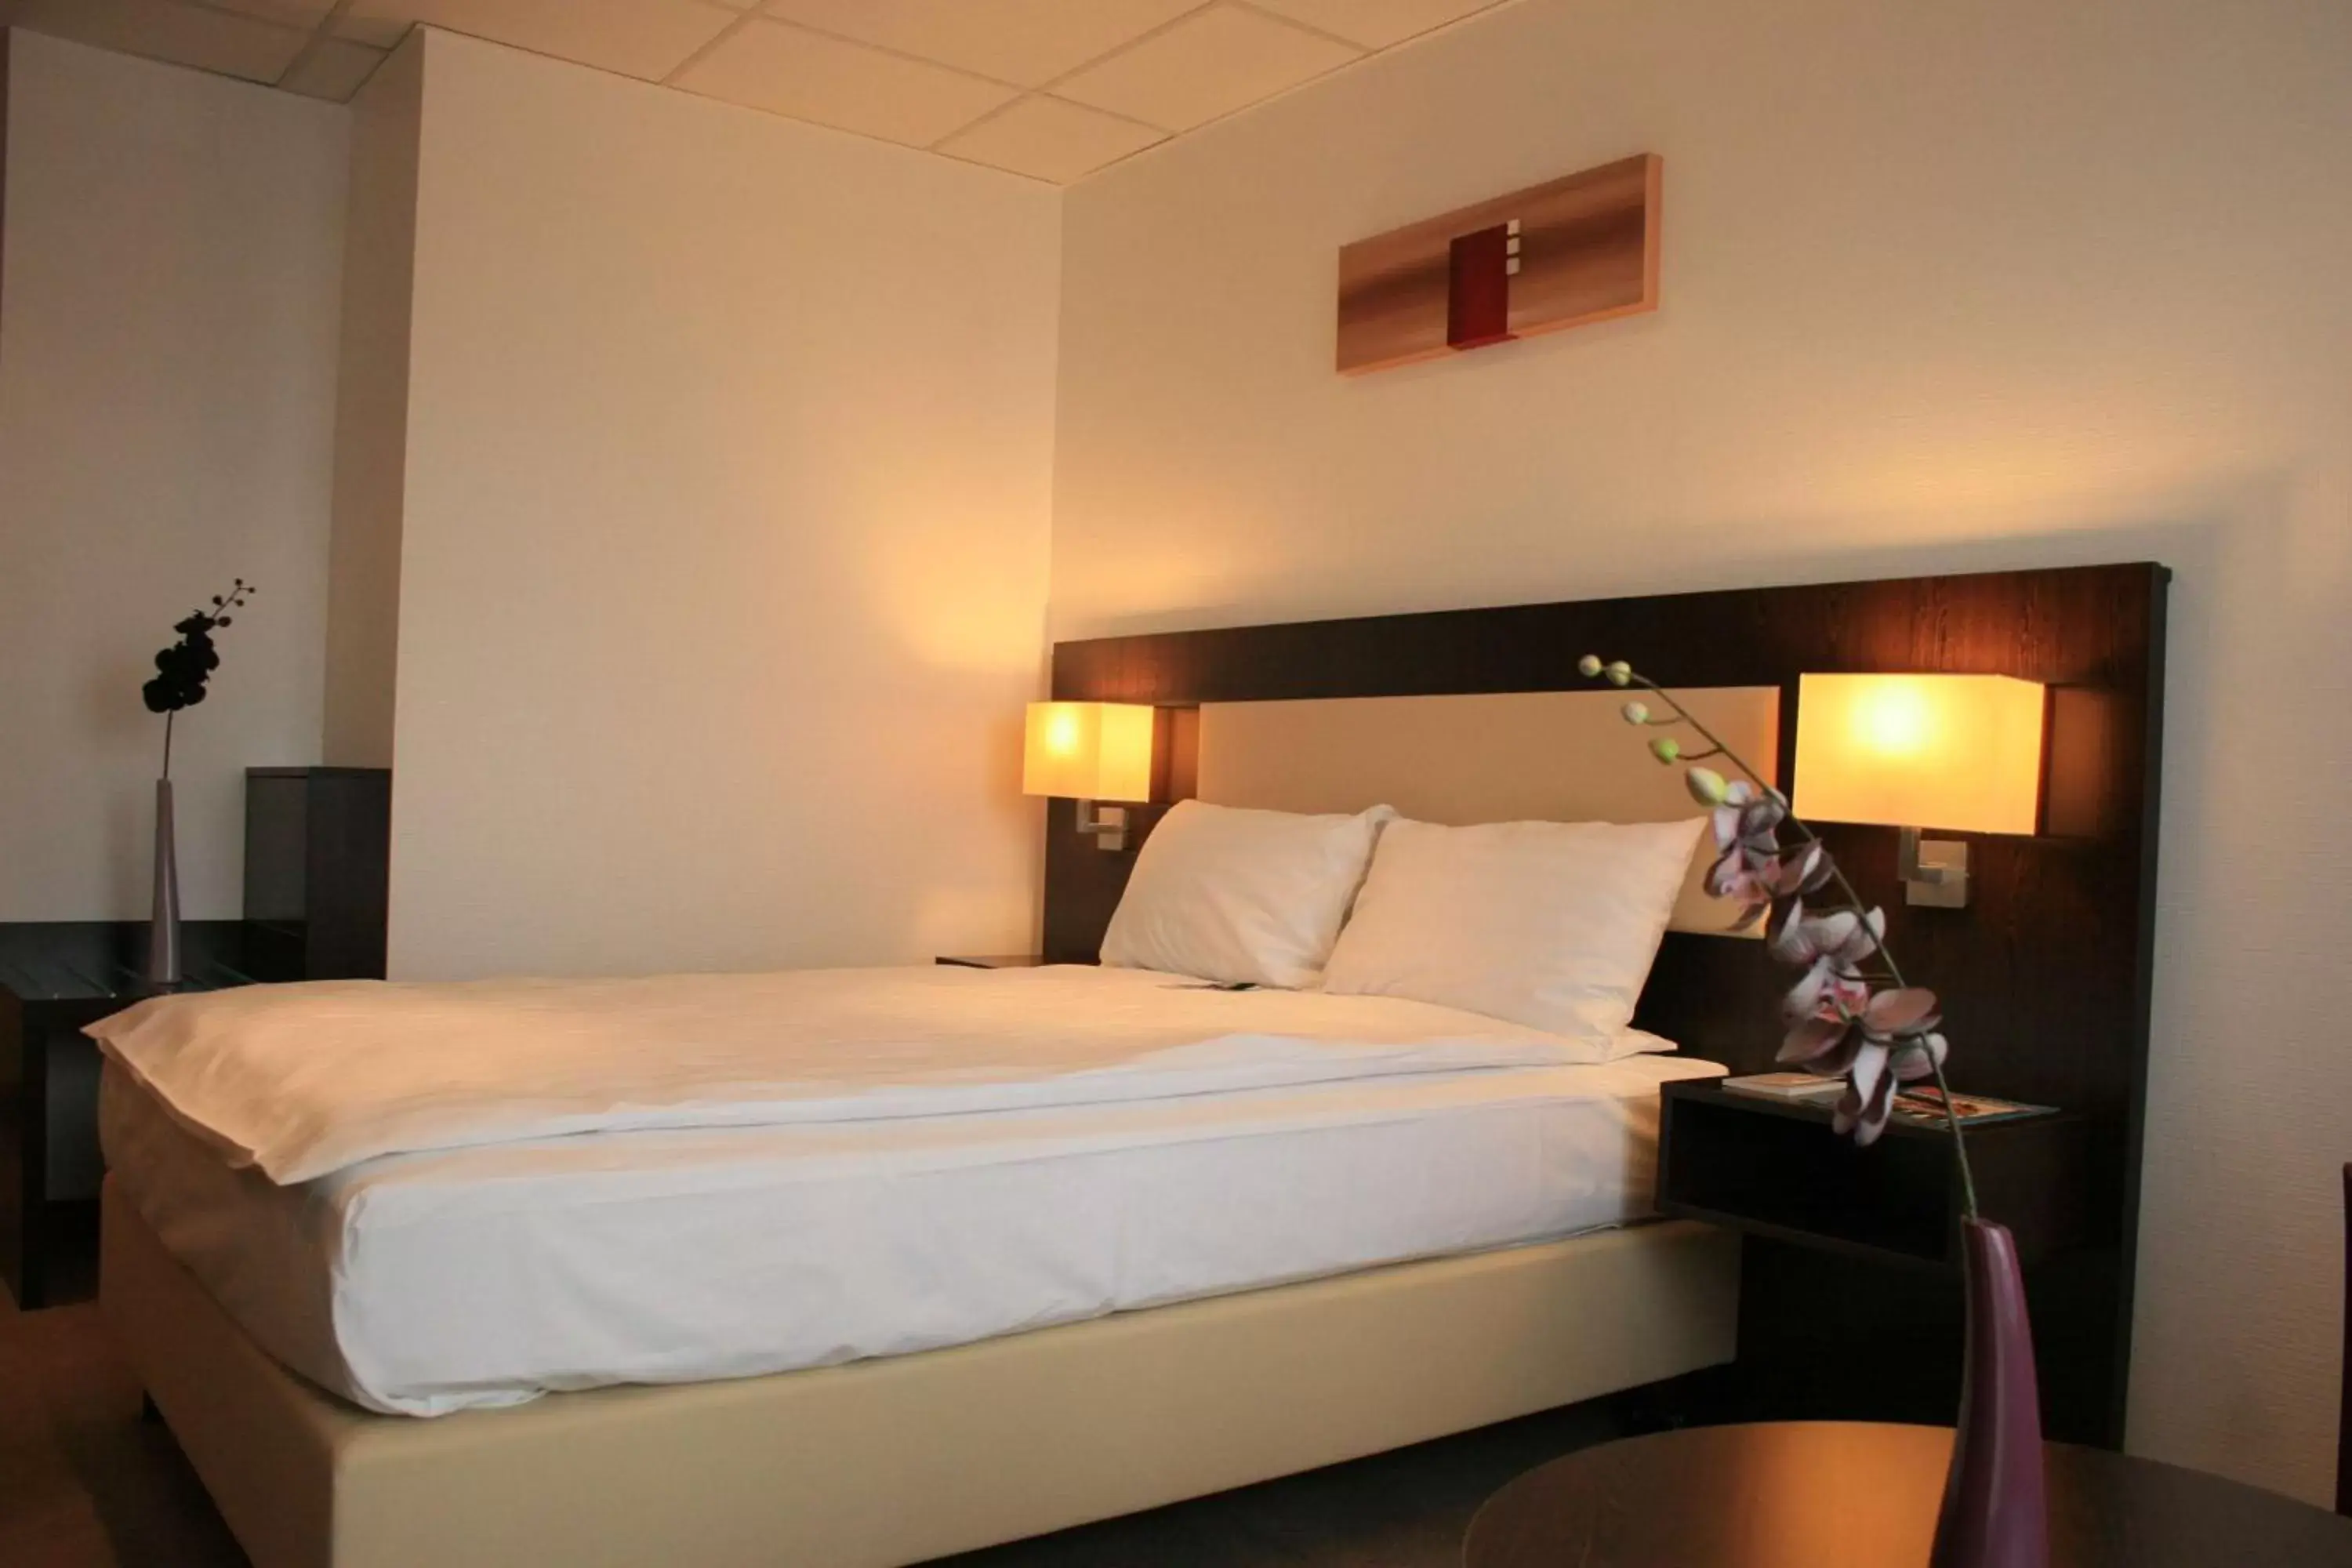 Queen Room with Queen Bed in Best Western Hotel Jena